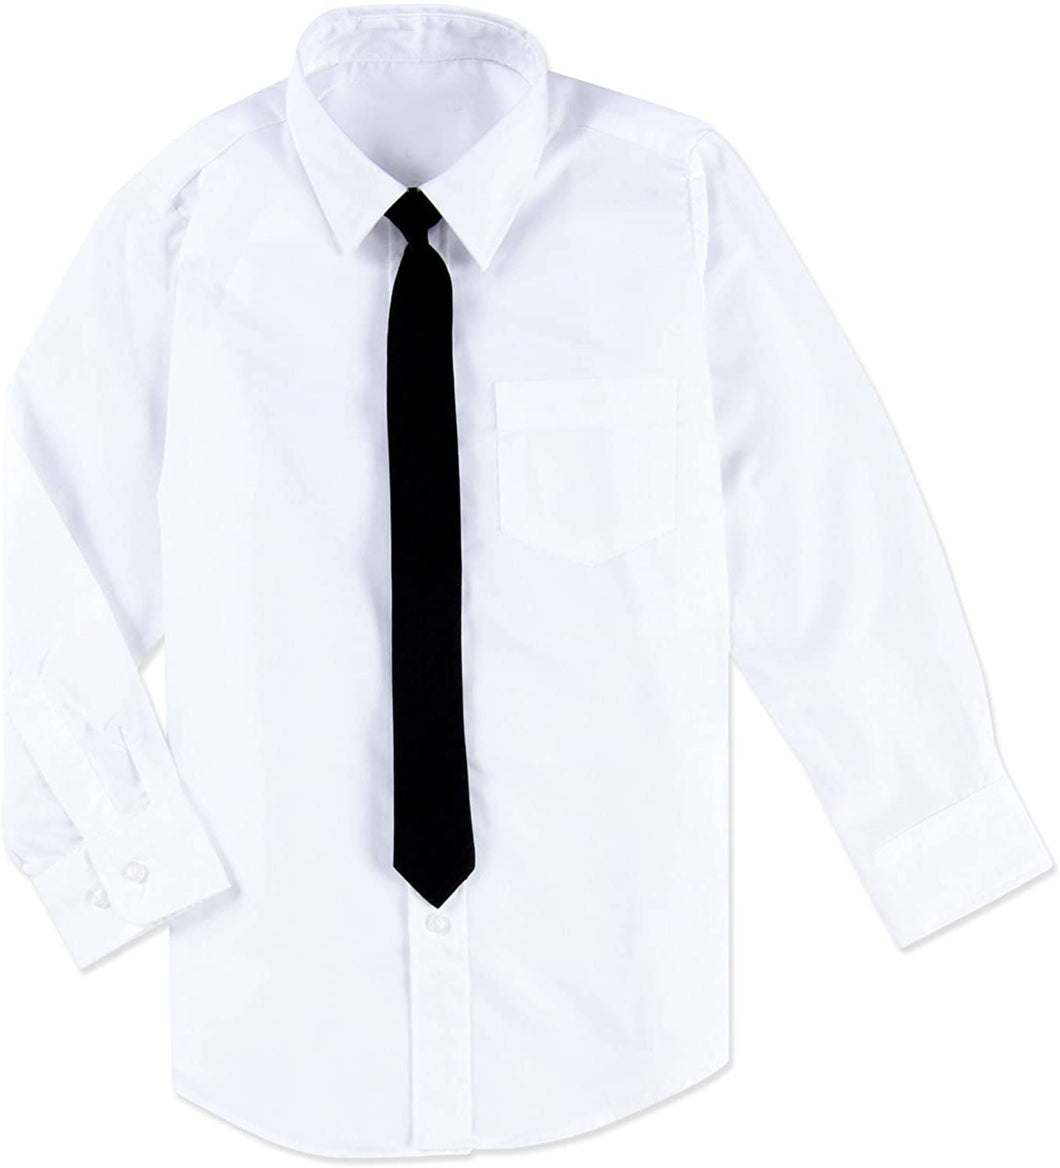 Hvid skjorte med sort slips til drenge/børn